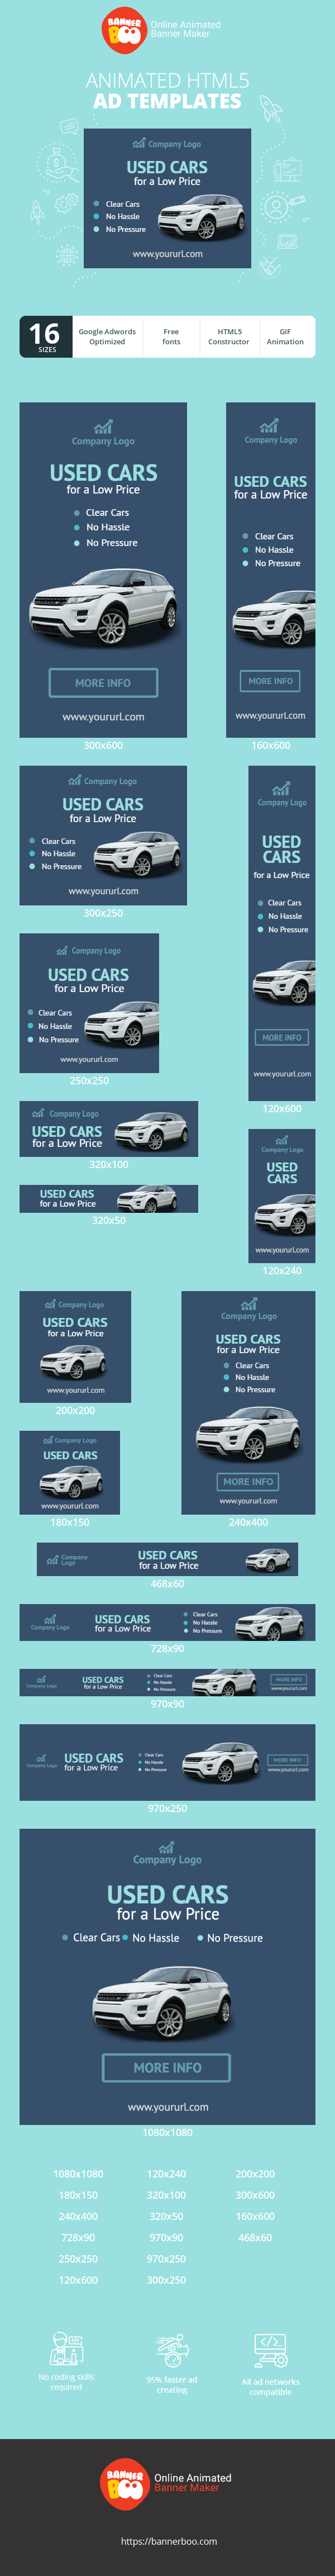 Шаблон рекламного банера — Used Cars for a Low Price